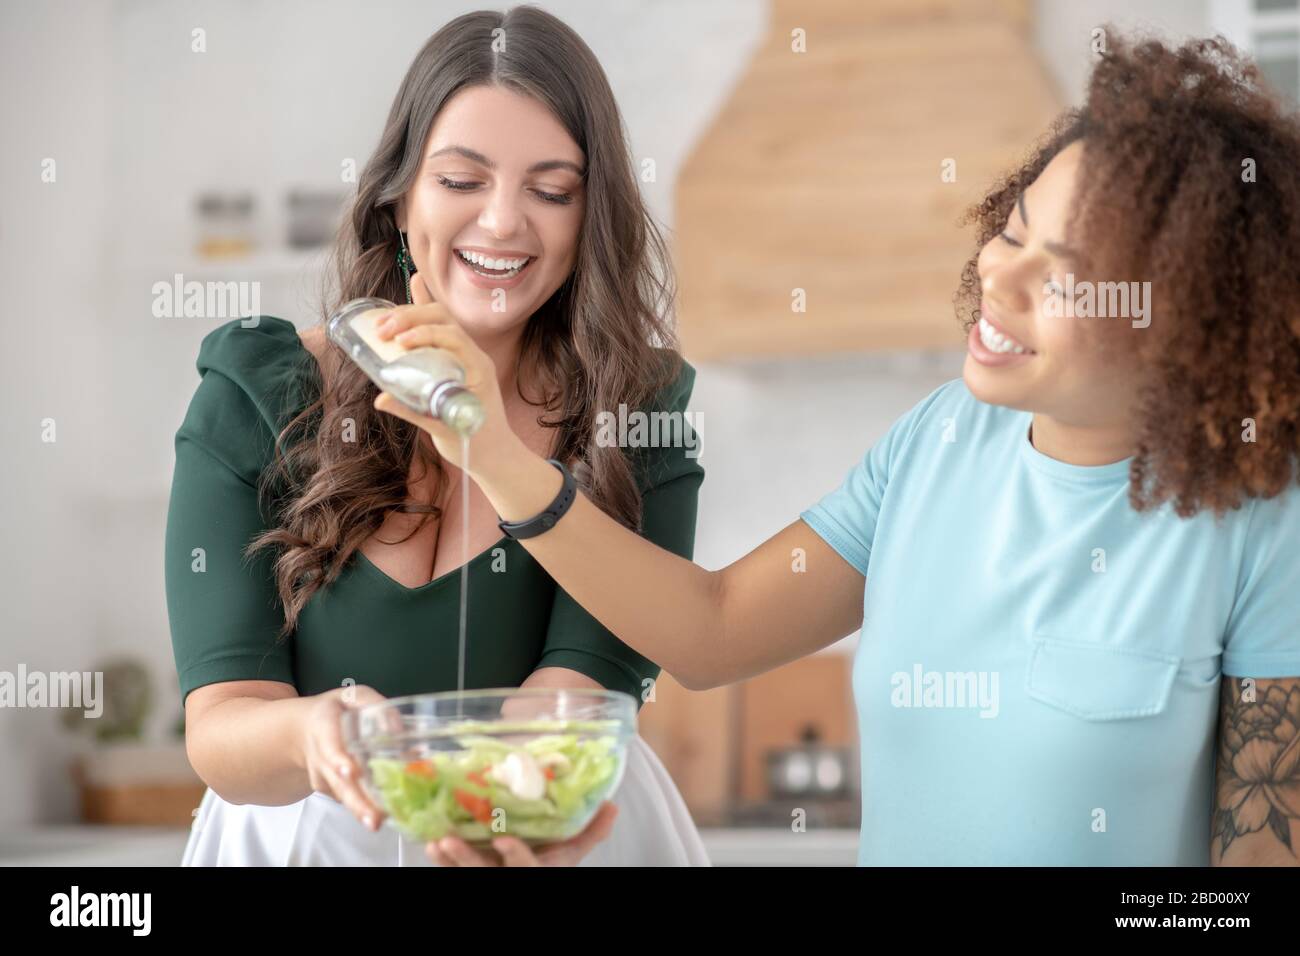 Deux femmes ajoutent de l'huile de salade dans la salade de légumes. Banque D'Images